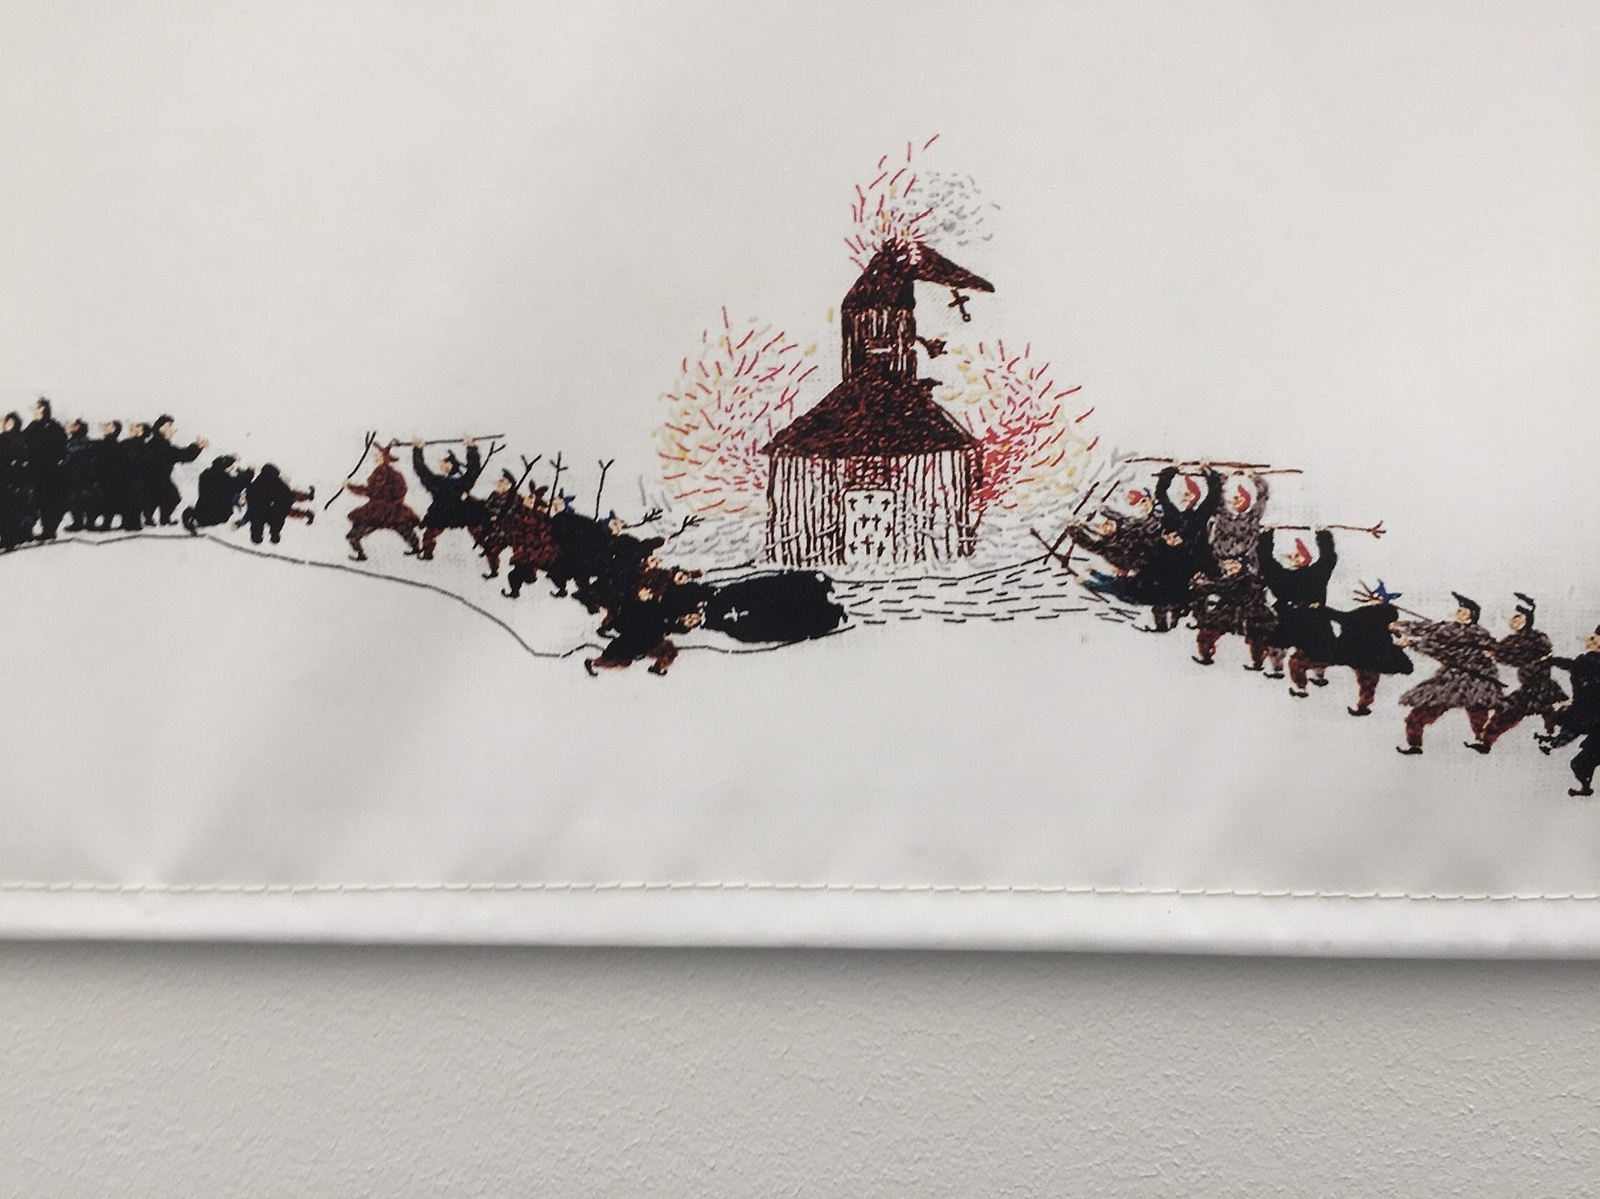 Detalj ur en kopia av Britta Marakatt-Labbas 24 meter långa brodyrverk om samernas historia.Foto: Britte Montigny